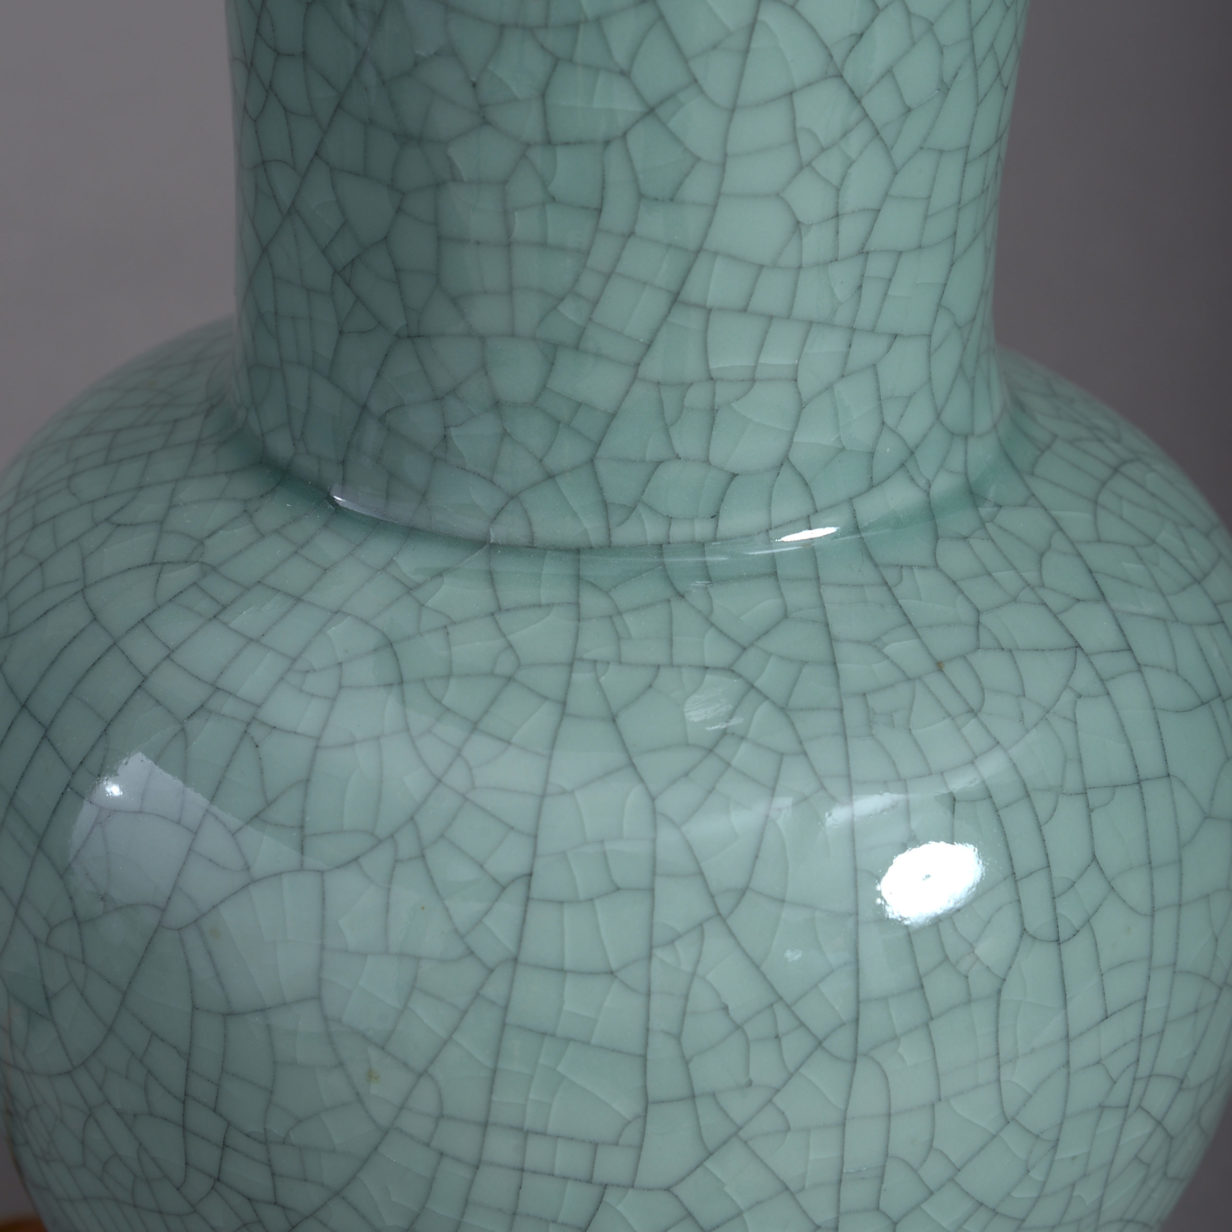 Celadon vase lamp